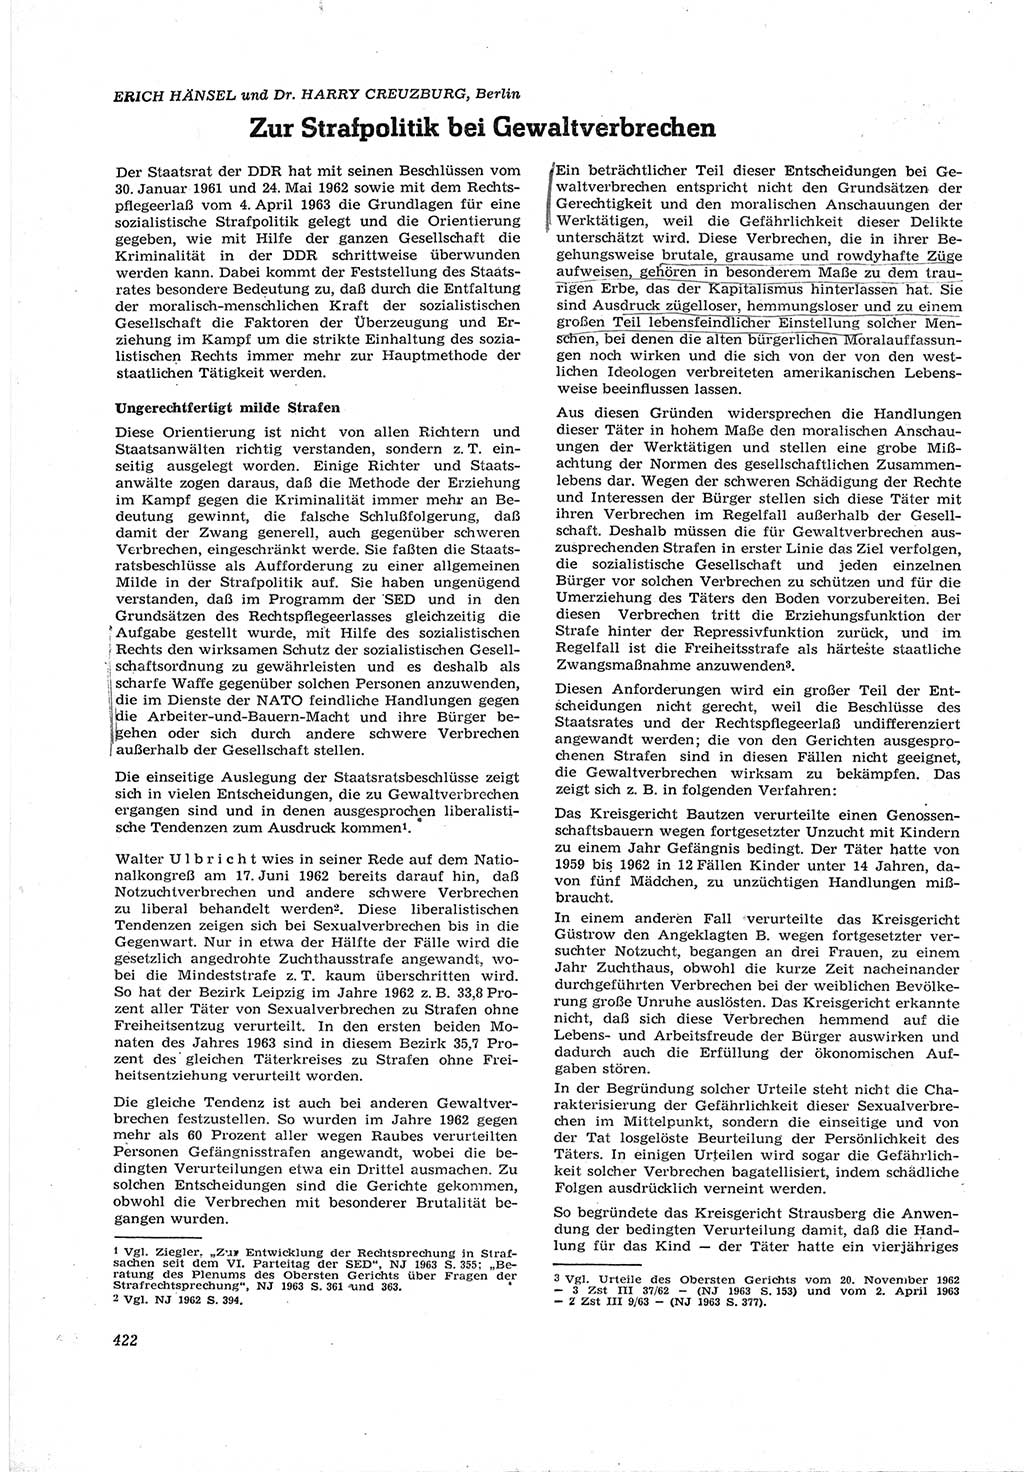 Neue Justiz (NJ), Zeitschrift für Recht und Rechtswissenschaft [Deutsche Demokratische Republik (DDR)], 17. Jahrgang 1963, Seite 422 (NJ DDR 1963, S. 422)